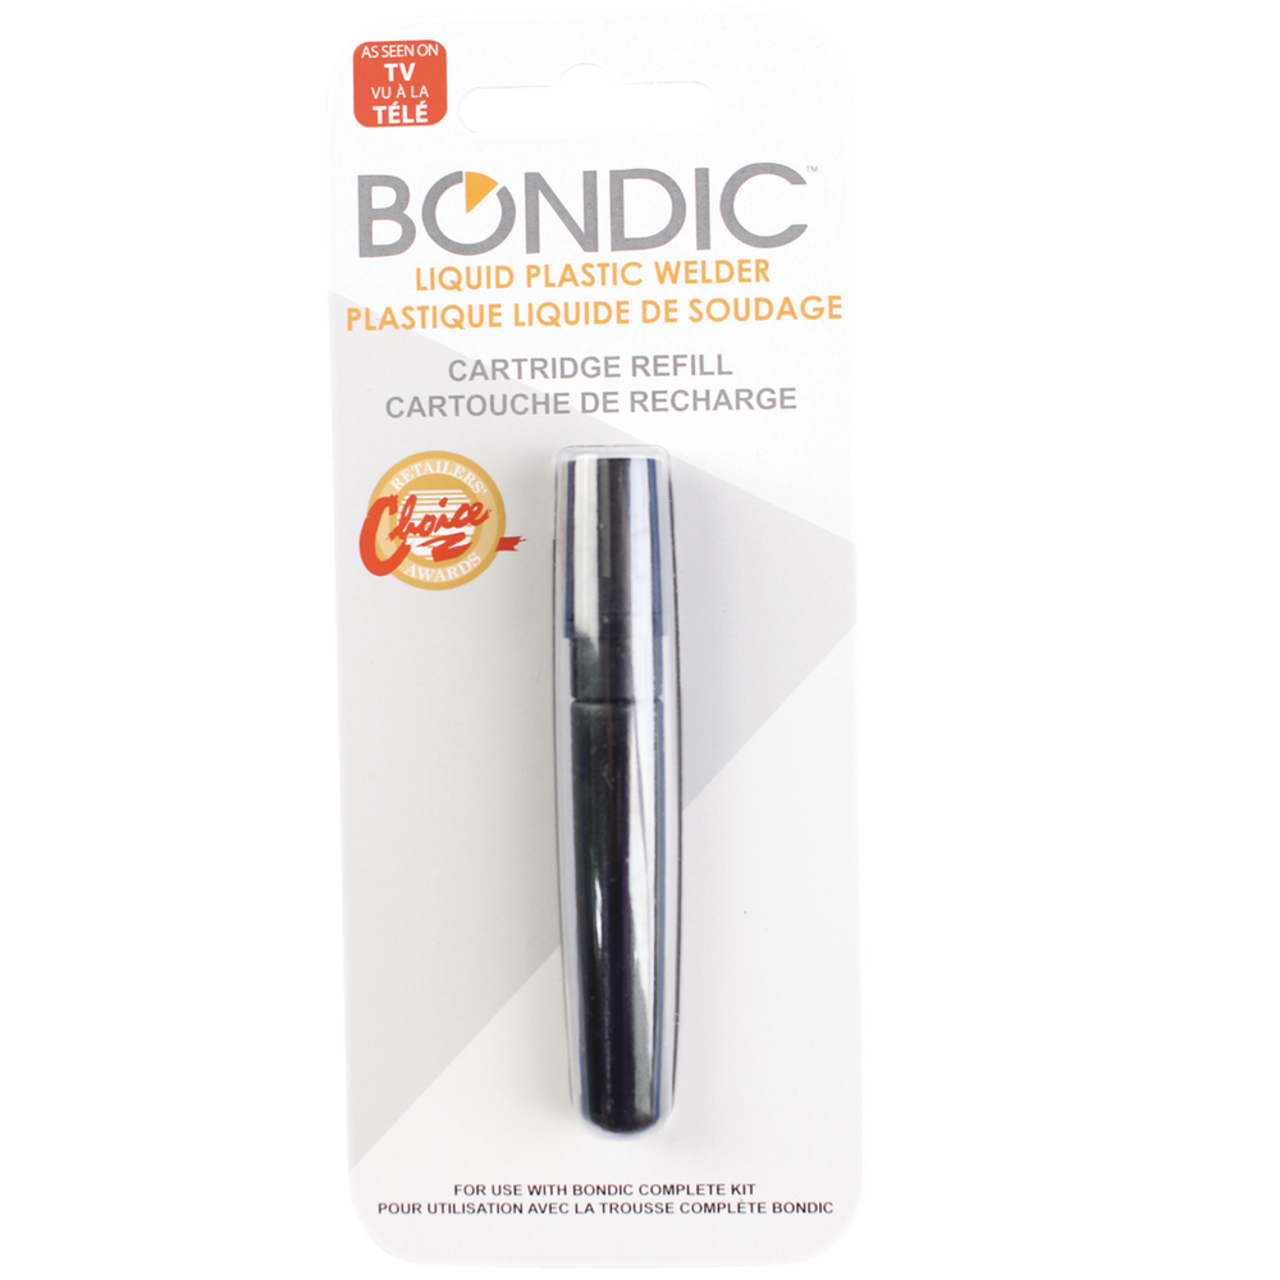 Bondic Liquid Plastic Welder Multi-Purpose Adhesive Glue Cartridge